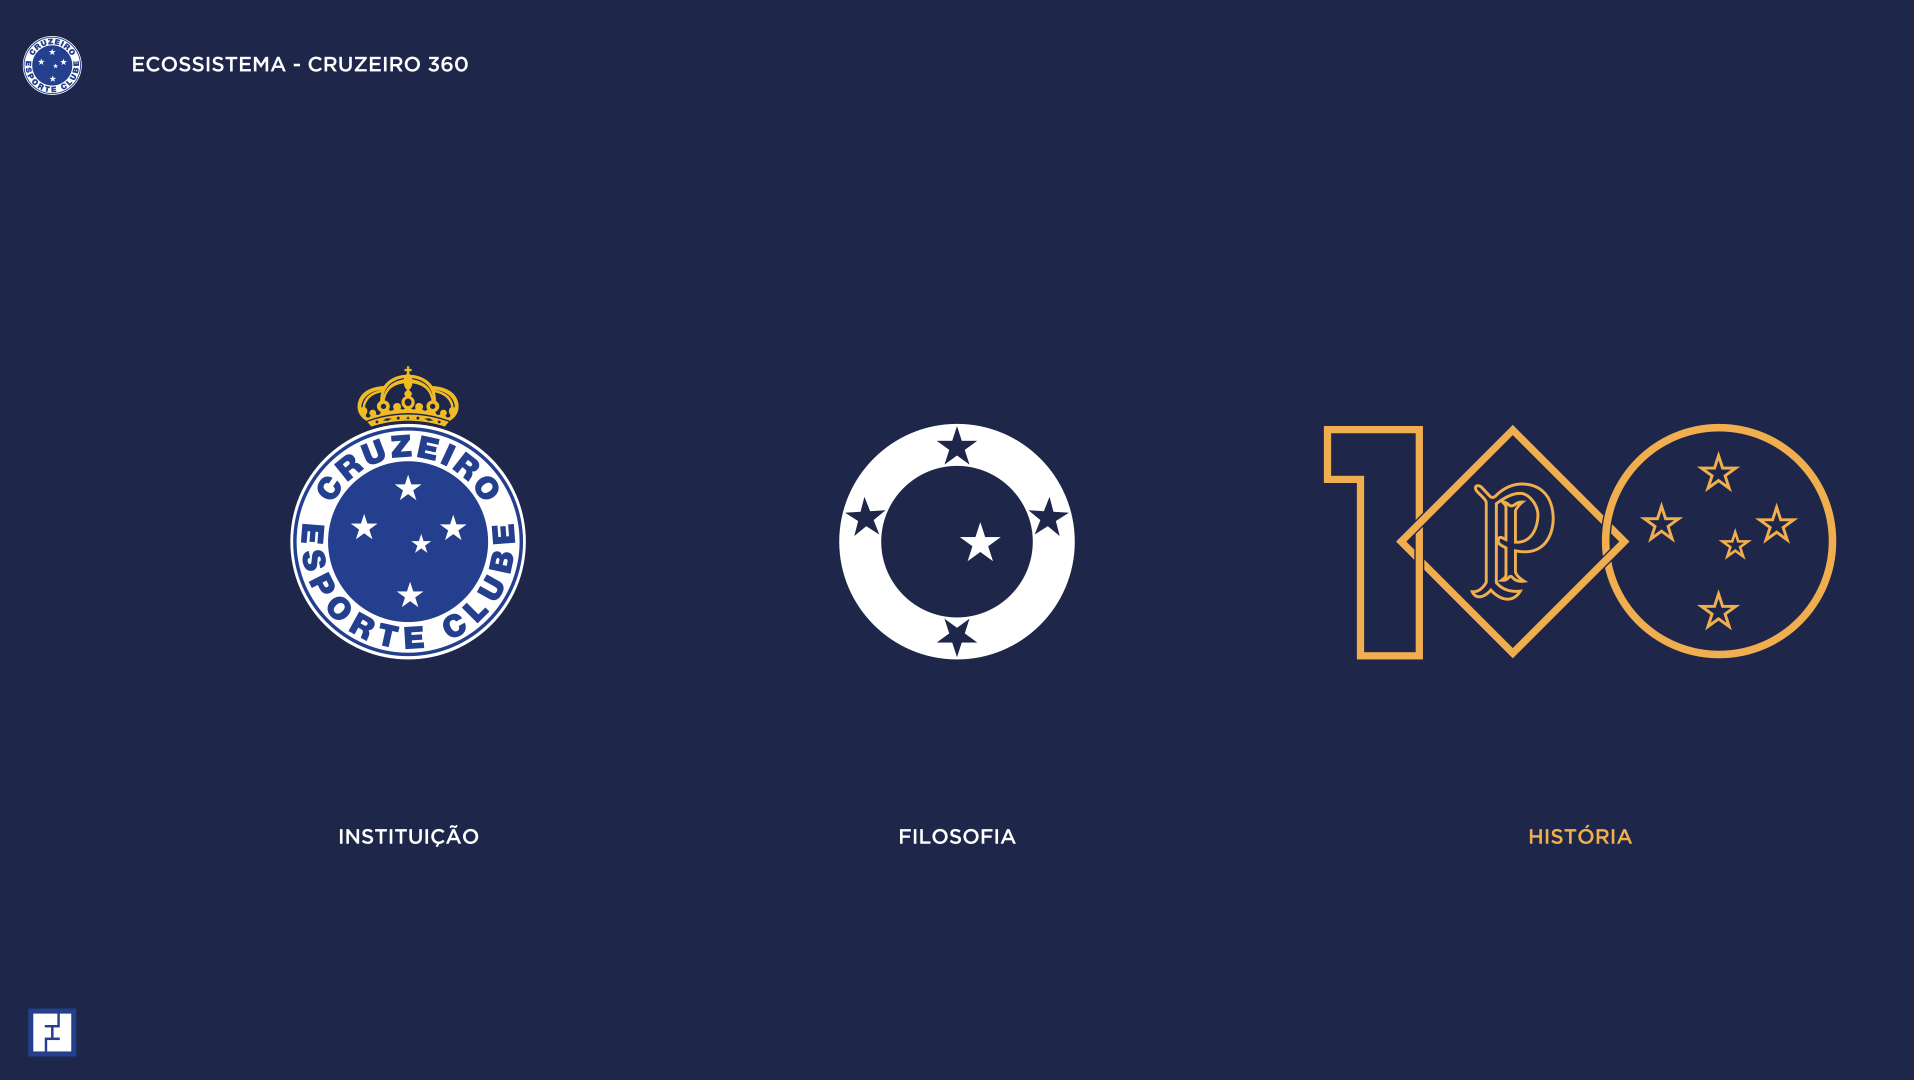 Identidade visual enriquecida: escudo oficial, Cruzeiro 360 e Centenário